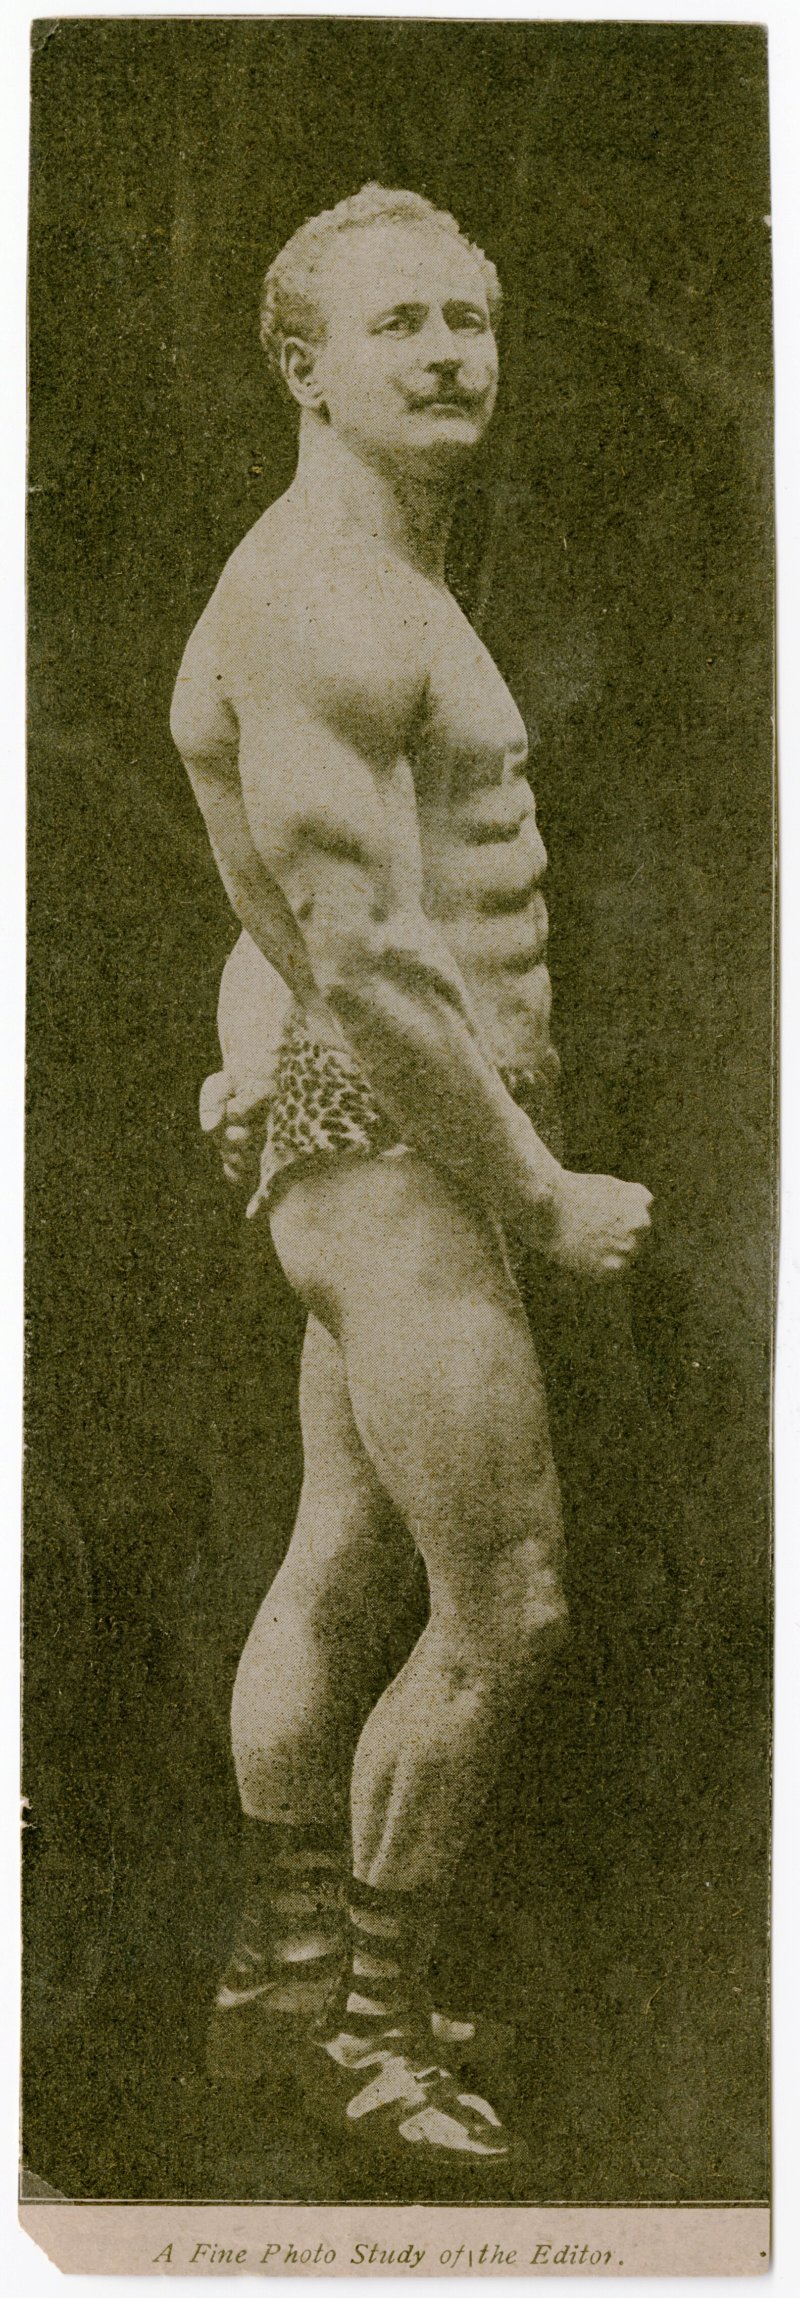 Sandow posing in side tricep pose